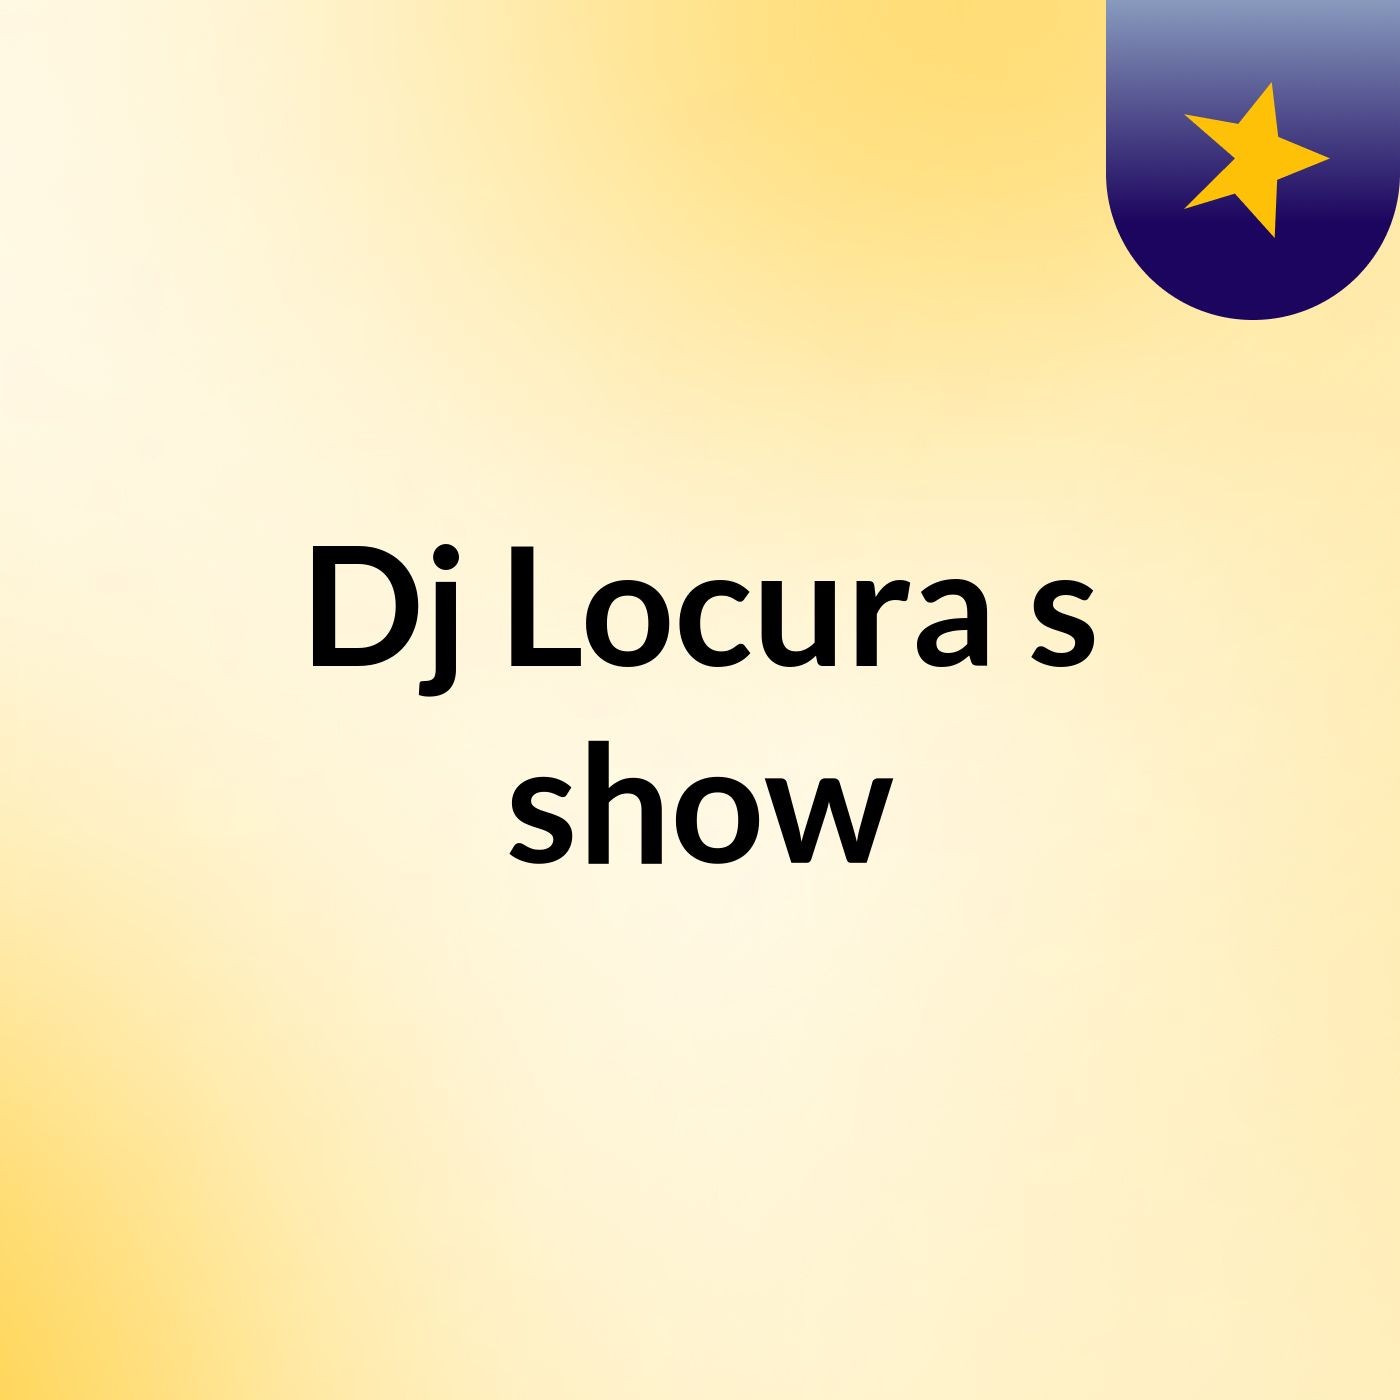 Dj Locura's show